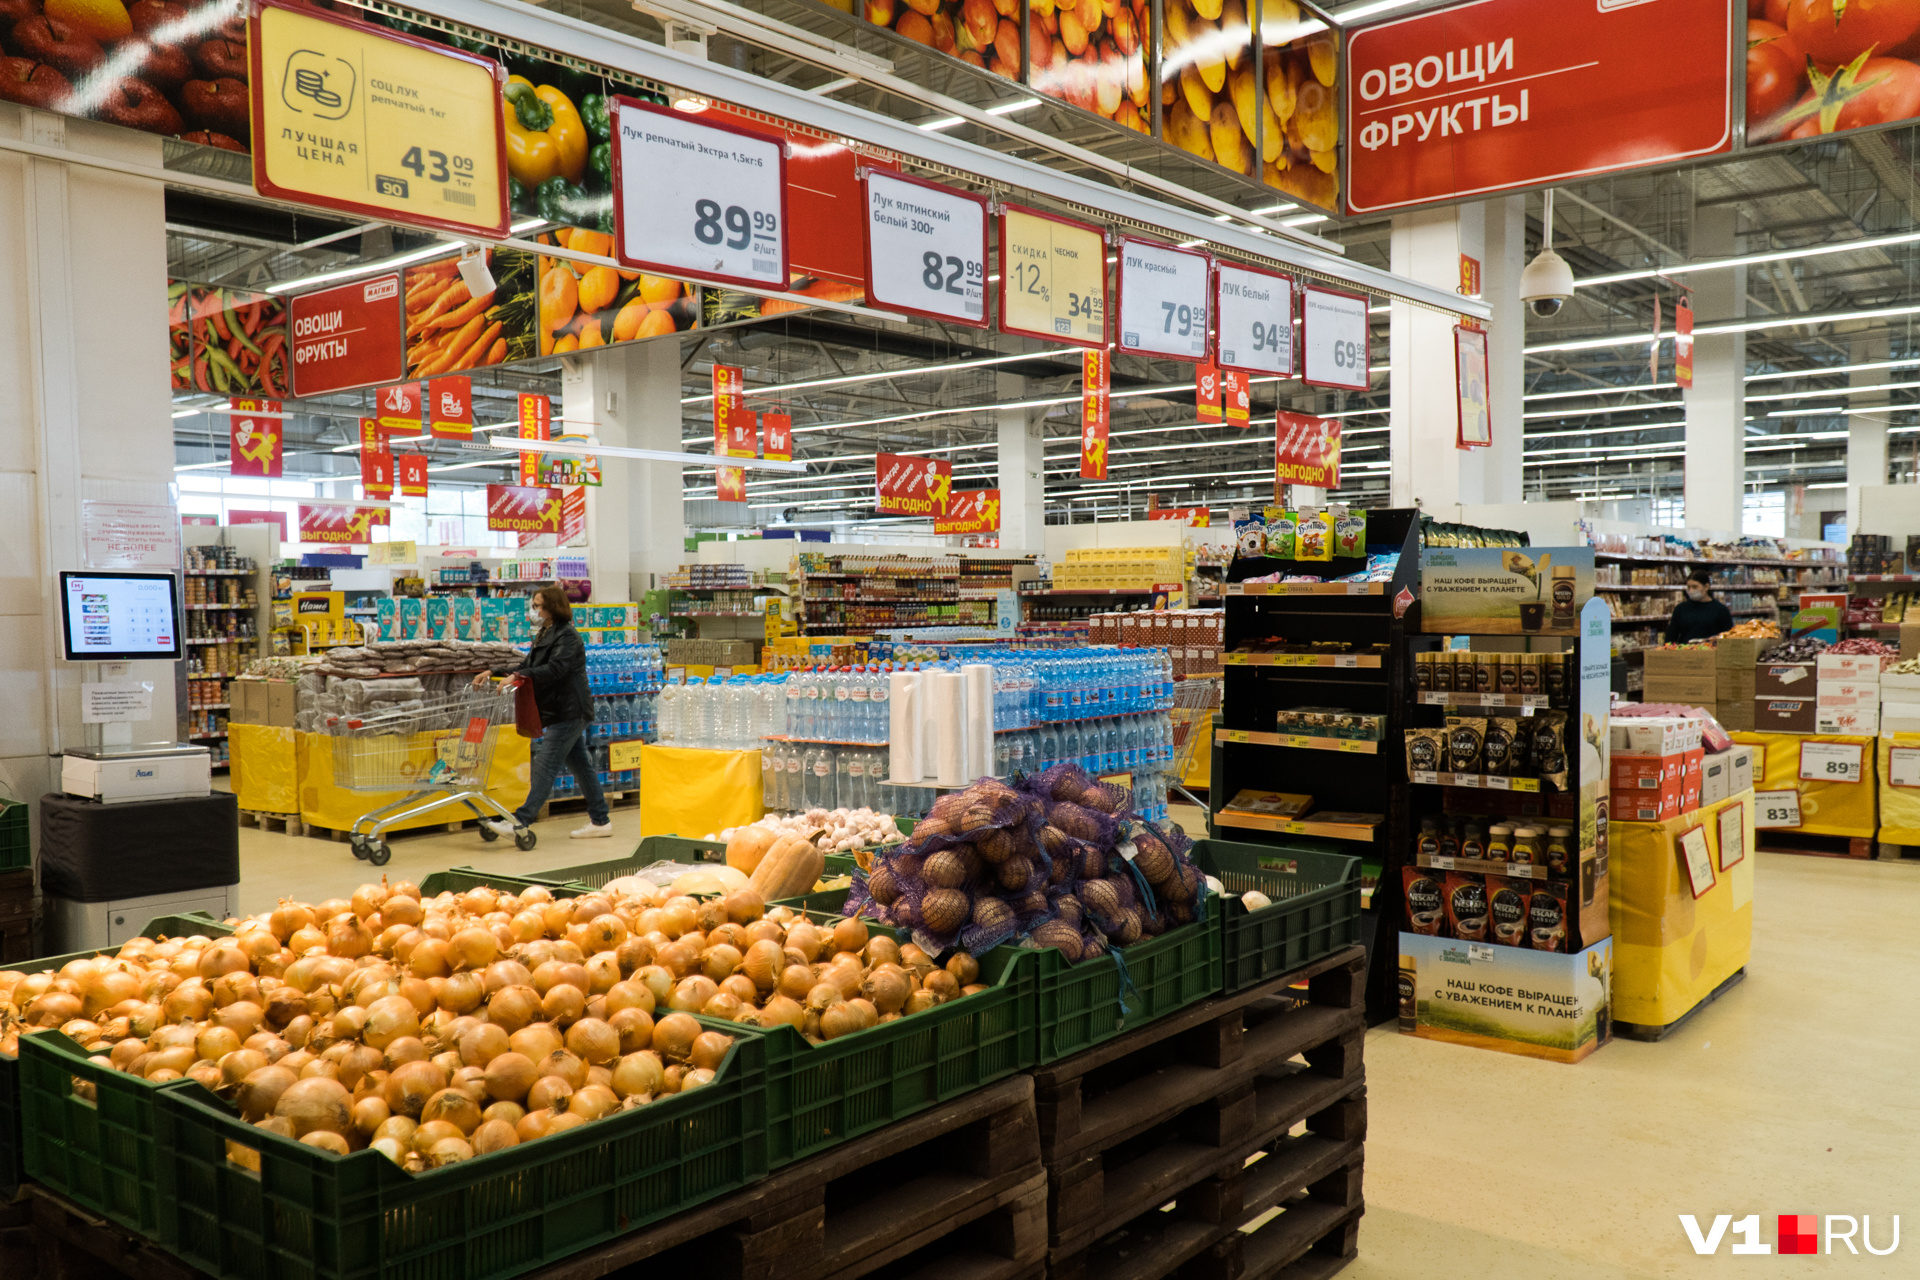 Ажиотажного спроса на продукты в Волгограде сейчас не наблюдается